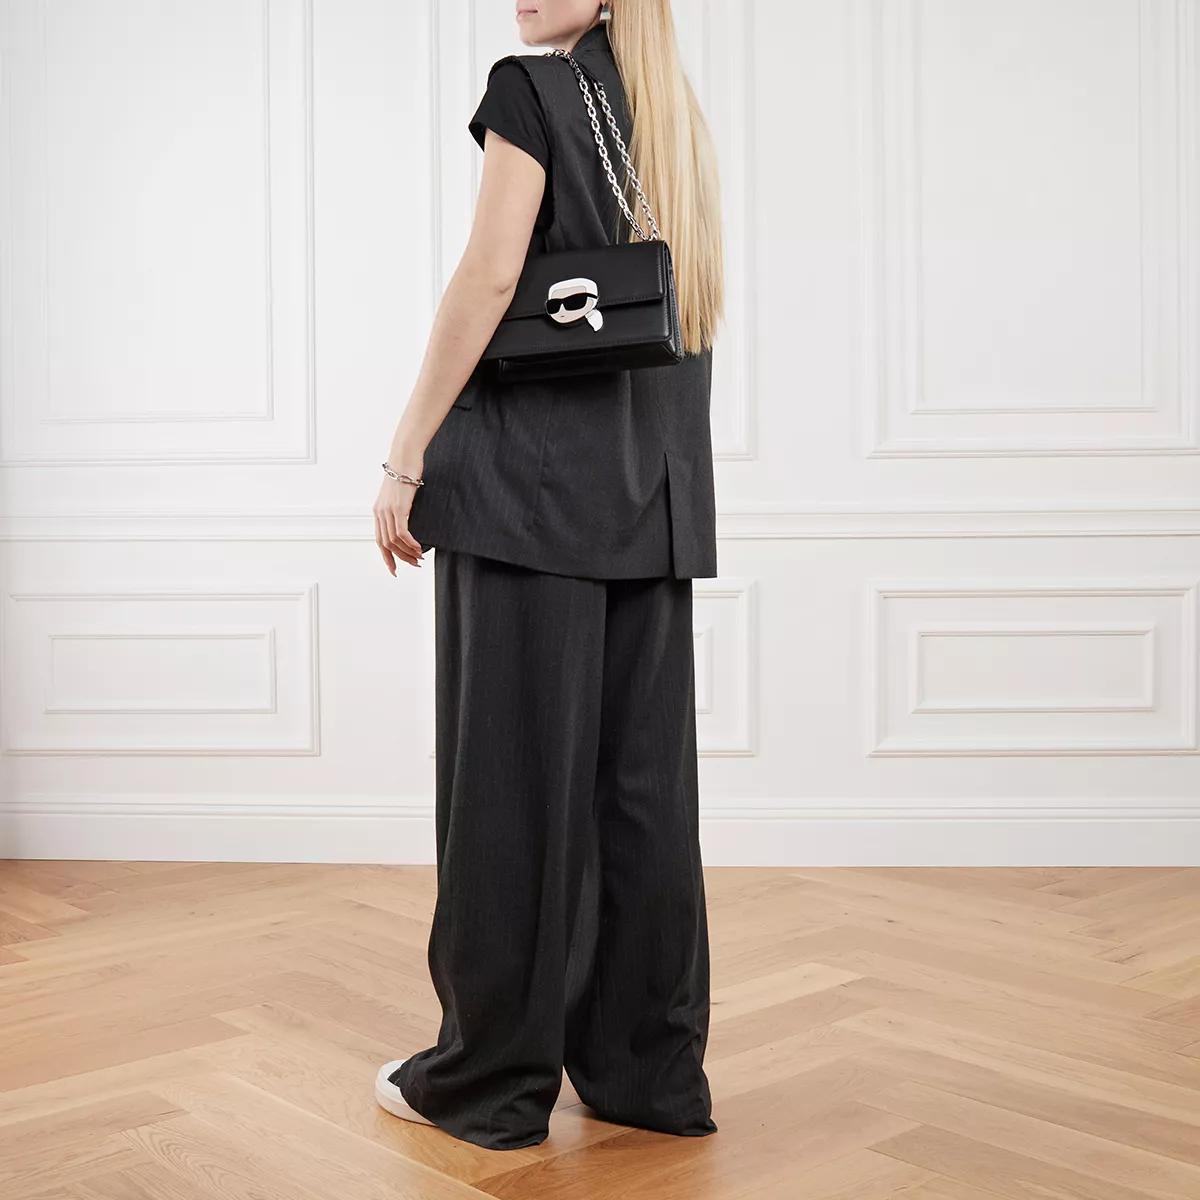 Karl Lagerfeld Crossbody bags K Ikonik 2.0 Leather SHB Lock in zwart